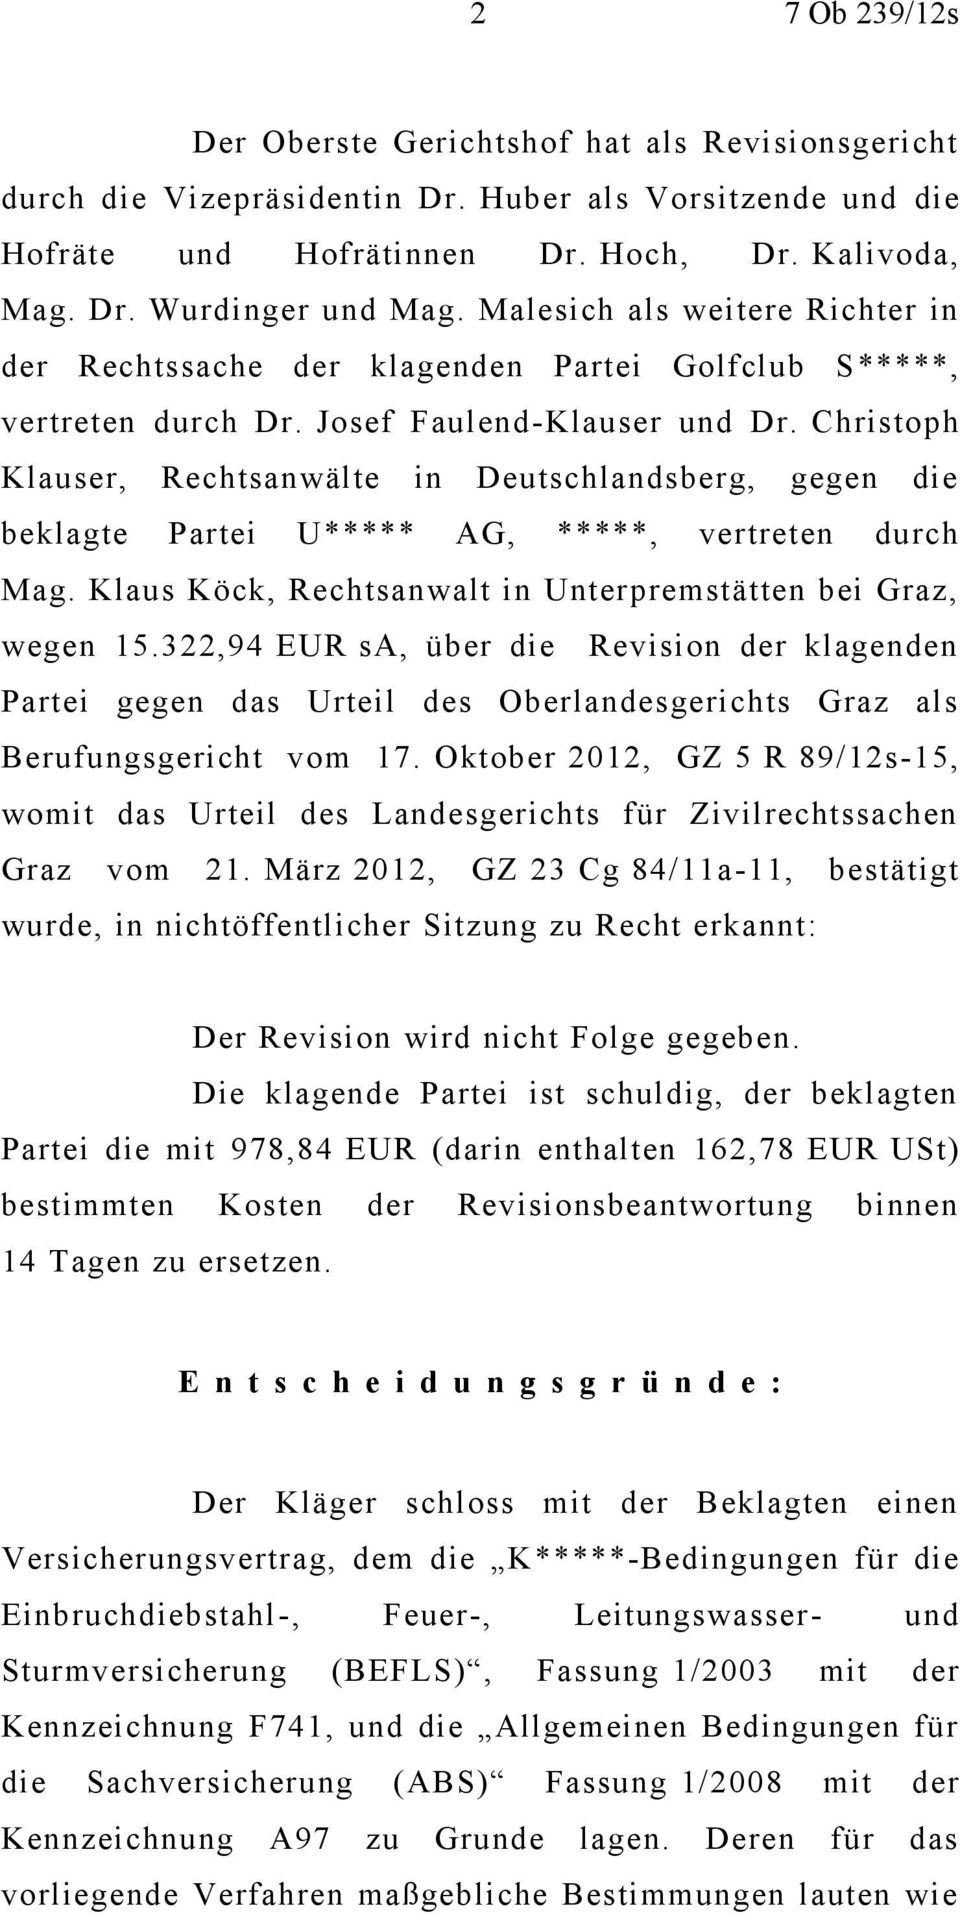 Christoph Klauser, Rechtsanwälte in Deutschlandsberg, gegen die beklagte Partei U***** AG, *****, vertreten durch Mag. Klaus Köck, Rechtsanwalt in Unterpremstätten bei Graz, wegen 15.